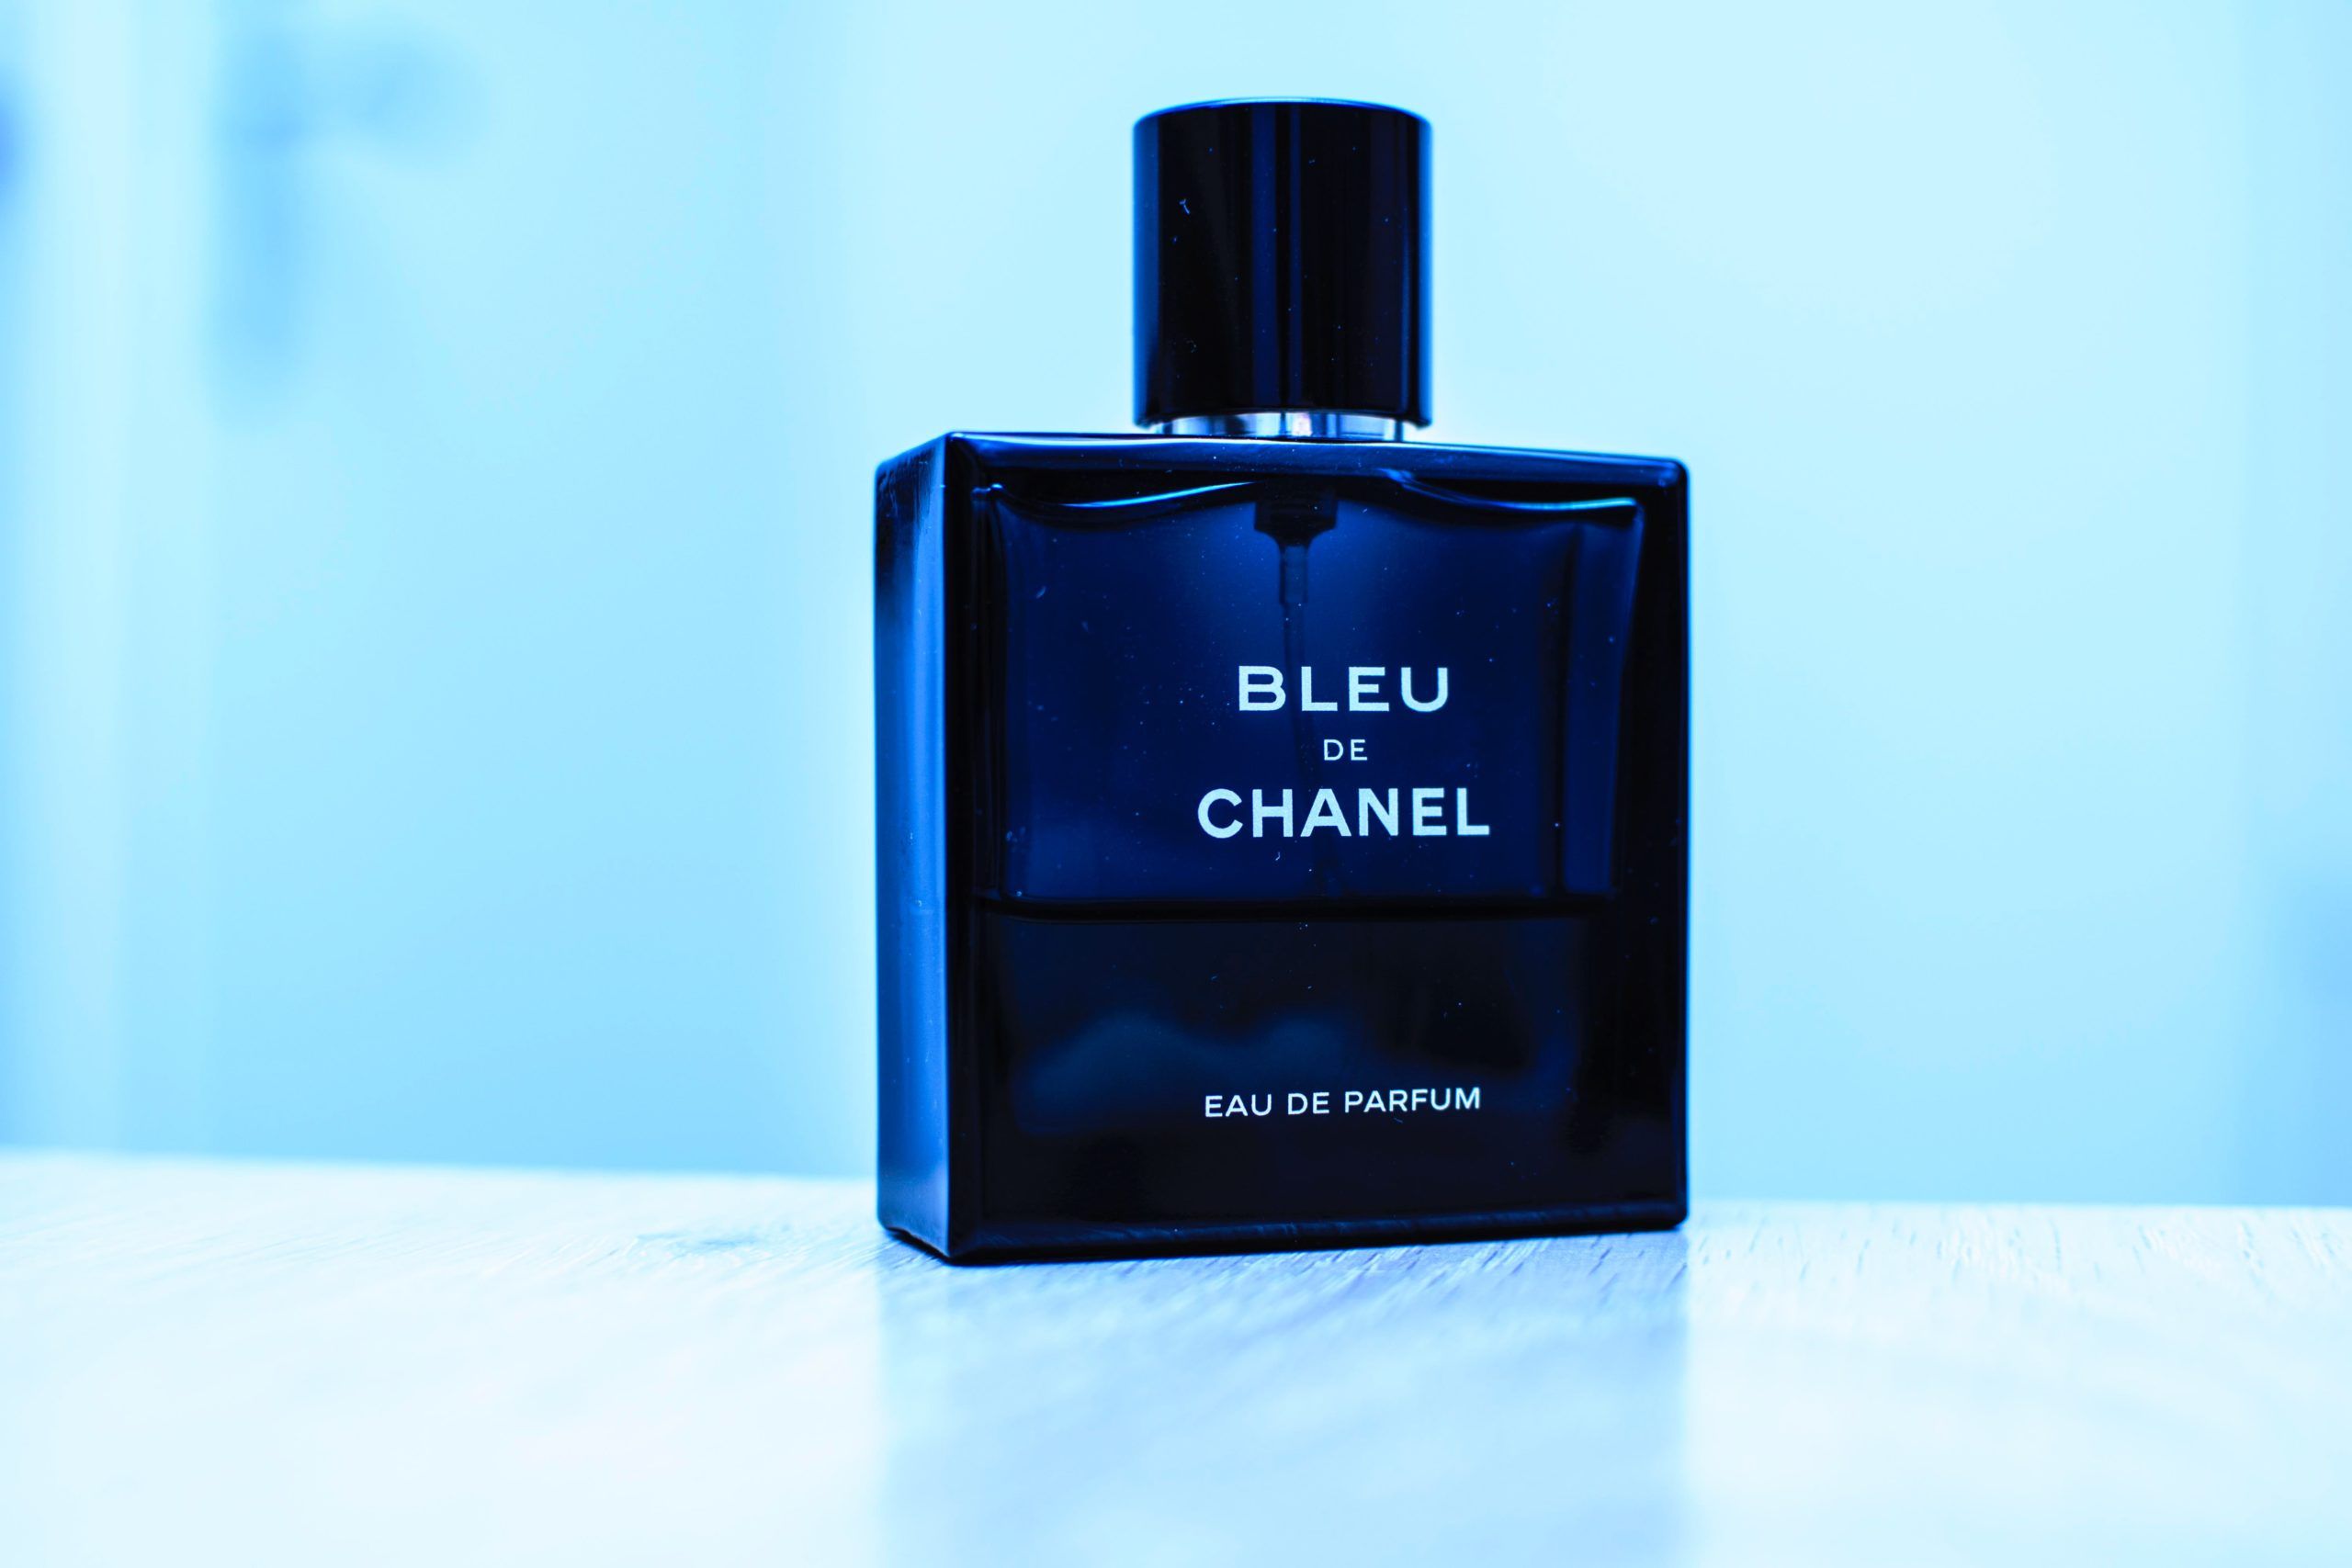 นำหอม Chanel Bleu De Chanel EDT for Men 100 ml  ChicPerfume  ขายนำหอมแท  นำหอมแบรนดเนม นำหอมผชาย นำหอมผหญง ราคาถก มนใจของแท ลาน  จดสงฟร EMS  Inspired by LnwShopcom